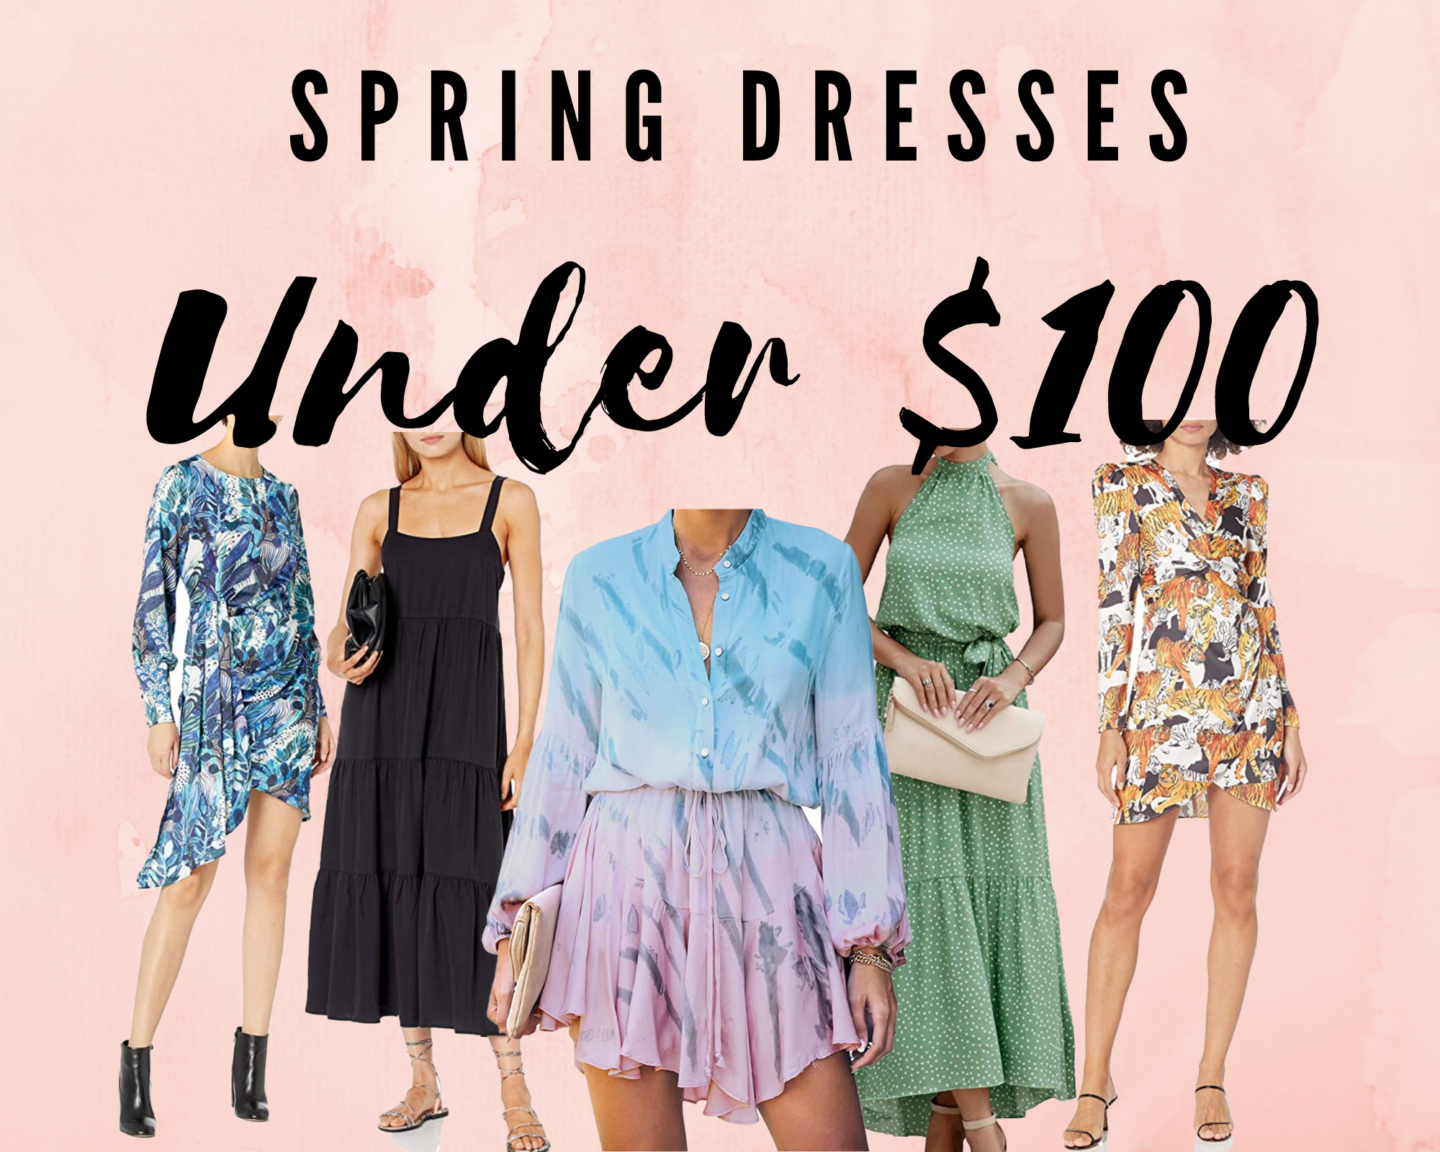 Spring dresses under $100